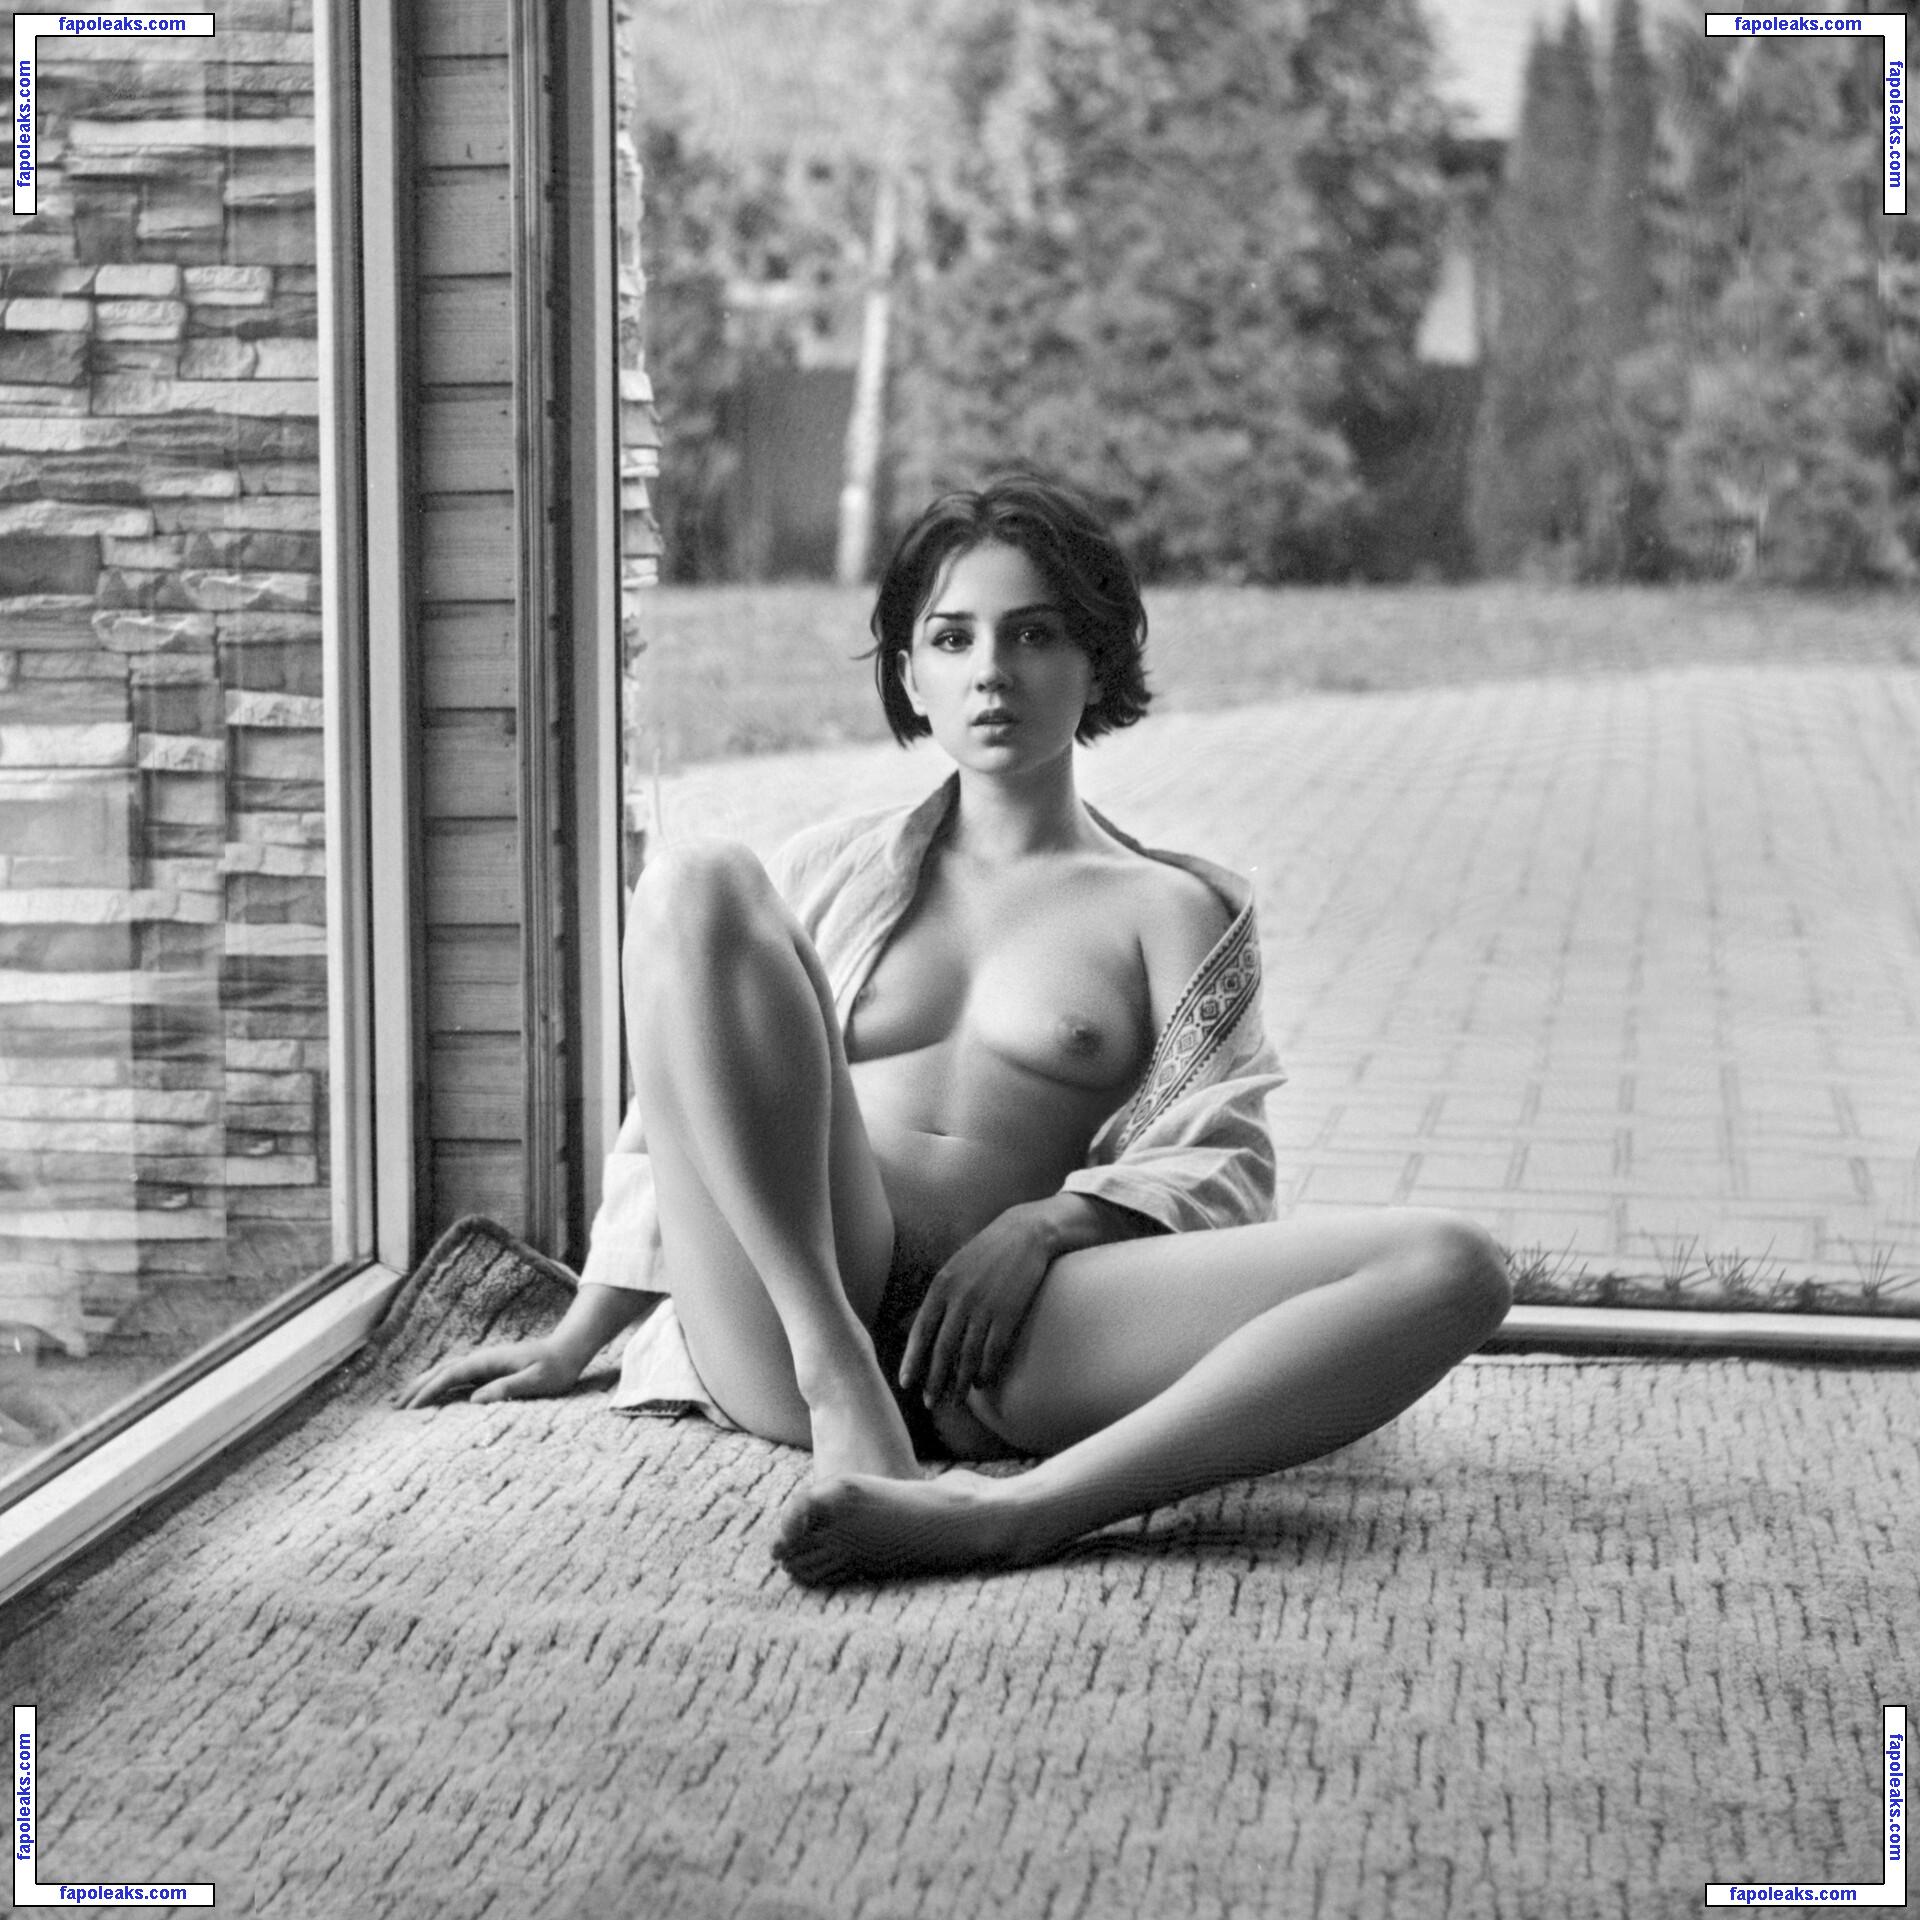 Anna Kotova / annakotova_actress / kotova_tm2 nude photo #0033 from OnlyFans